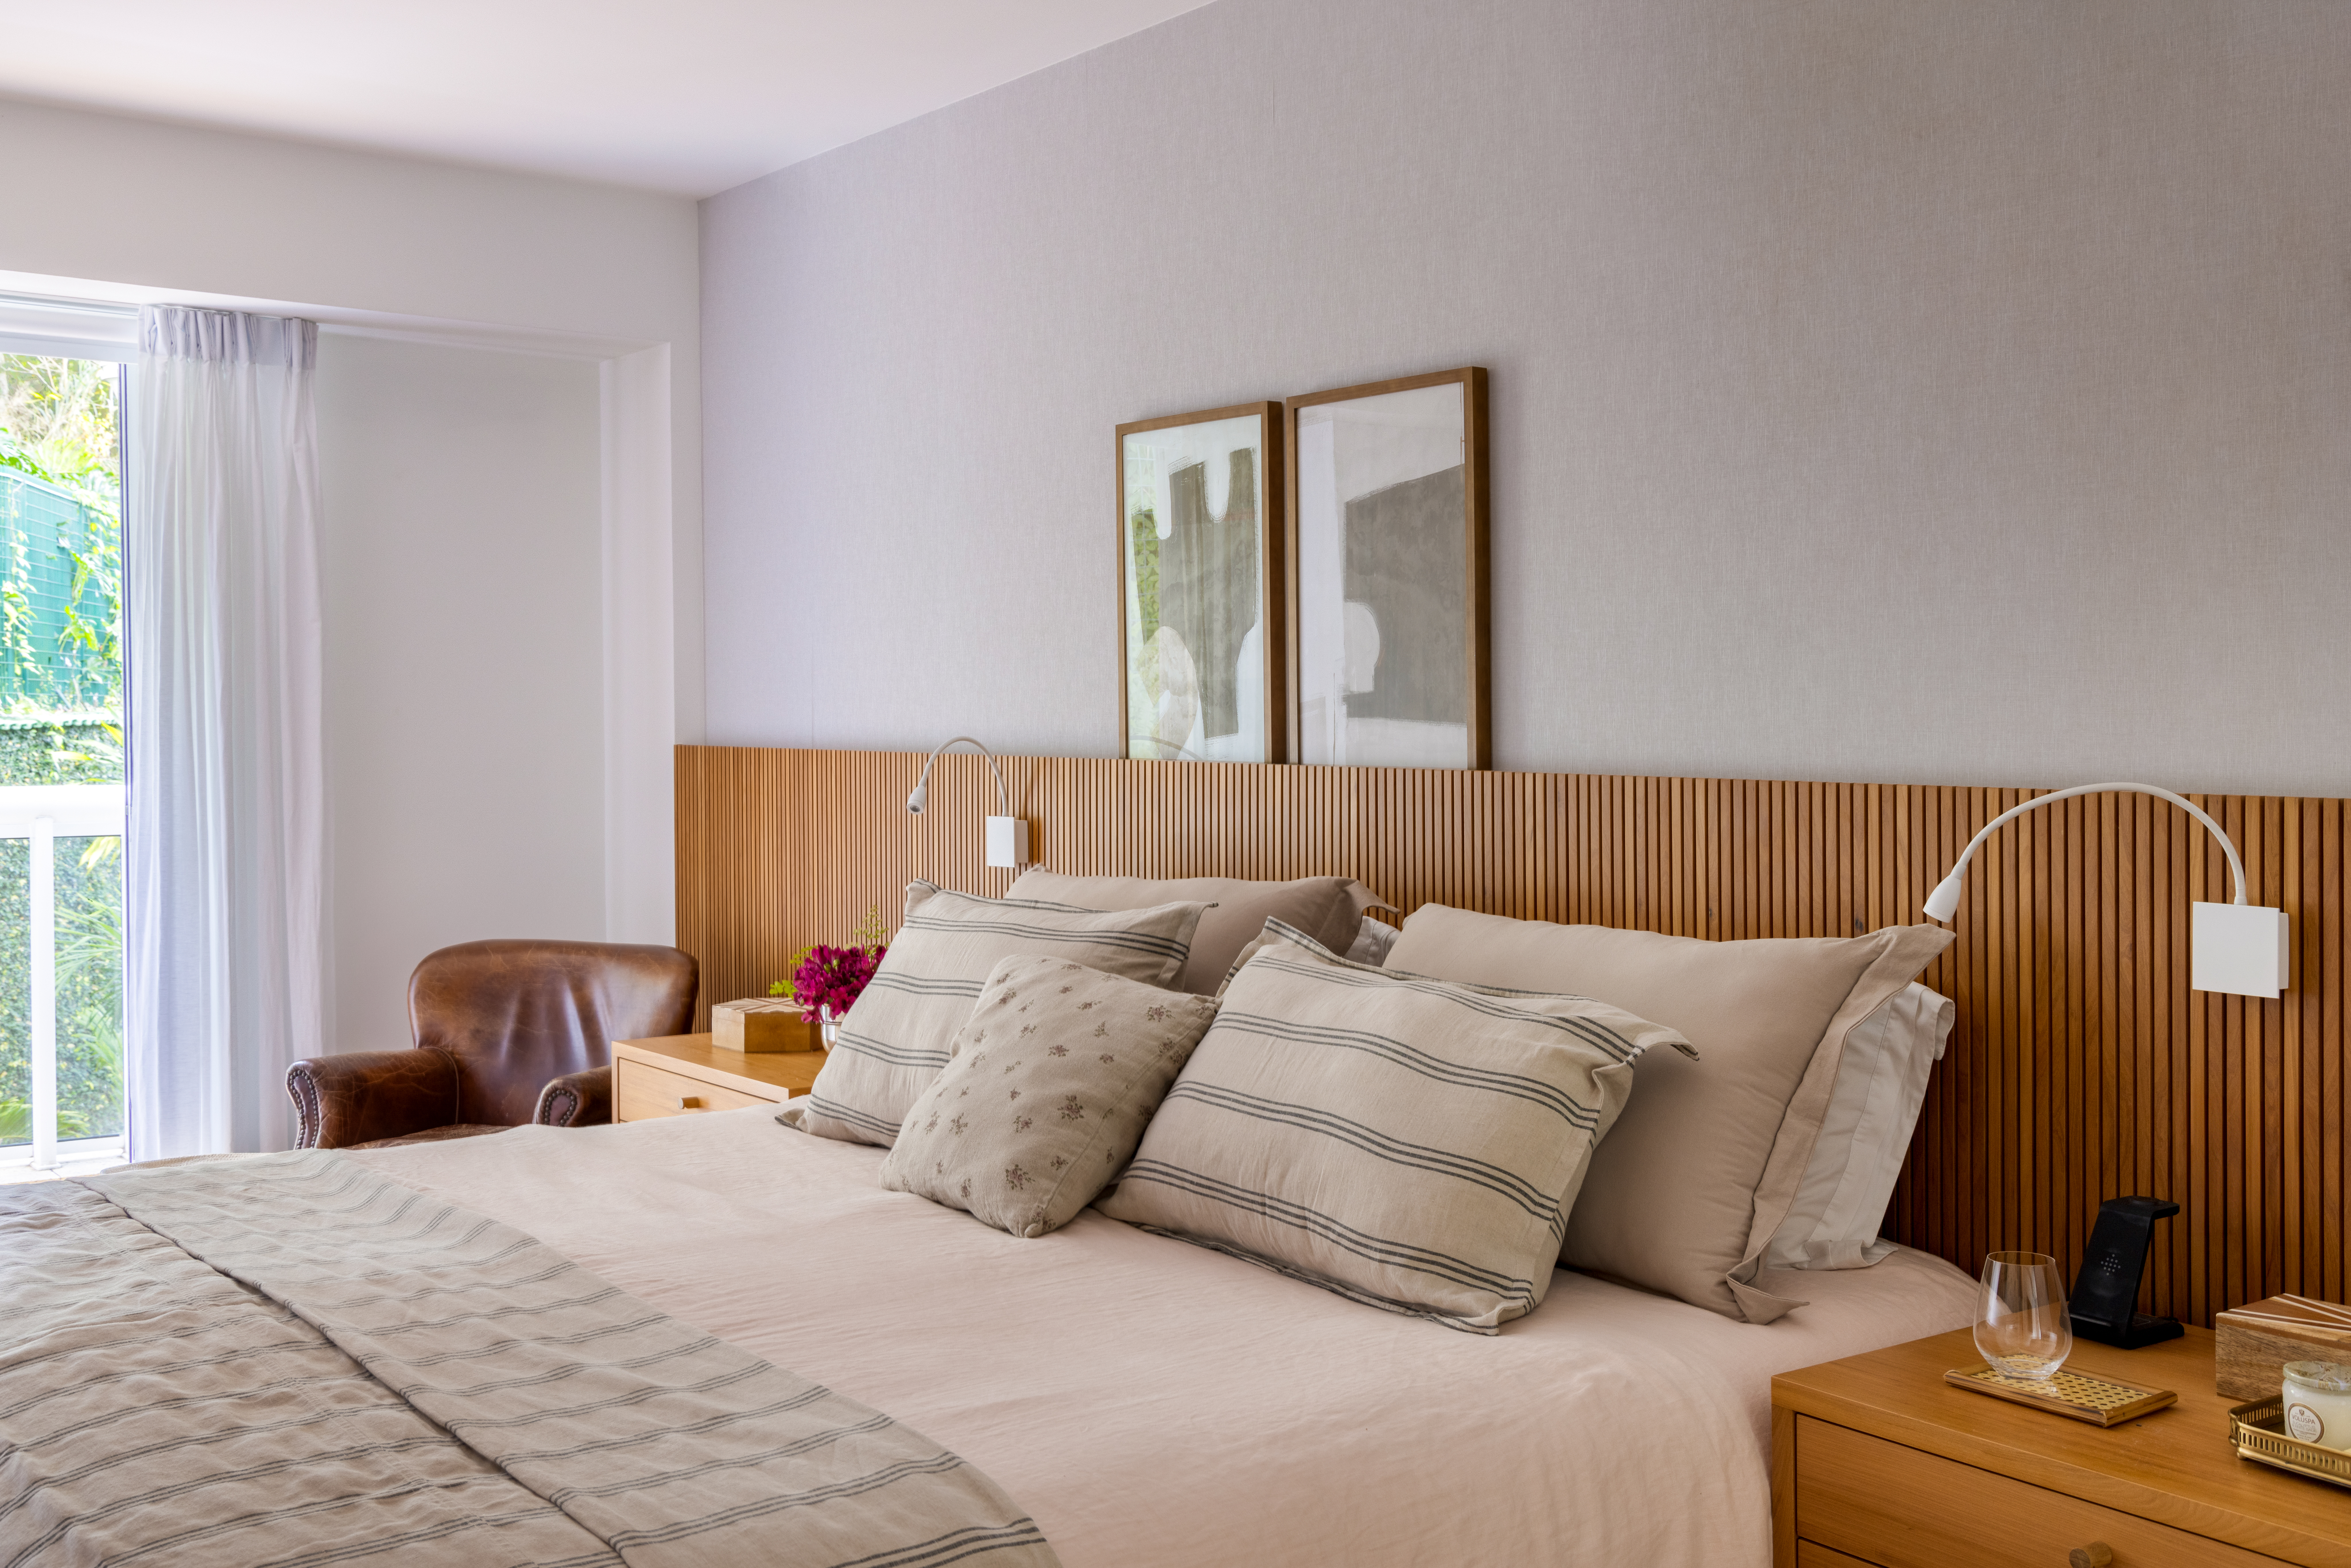 Projeto de Manuela Santos. Na foto, quarto com cama de casal e cabeceira de madeira ripada.